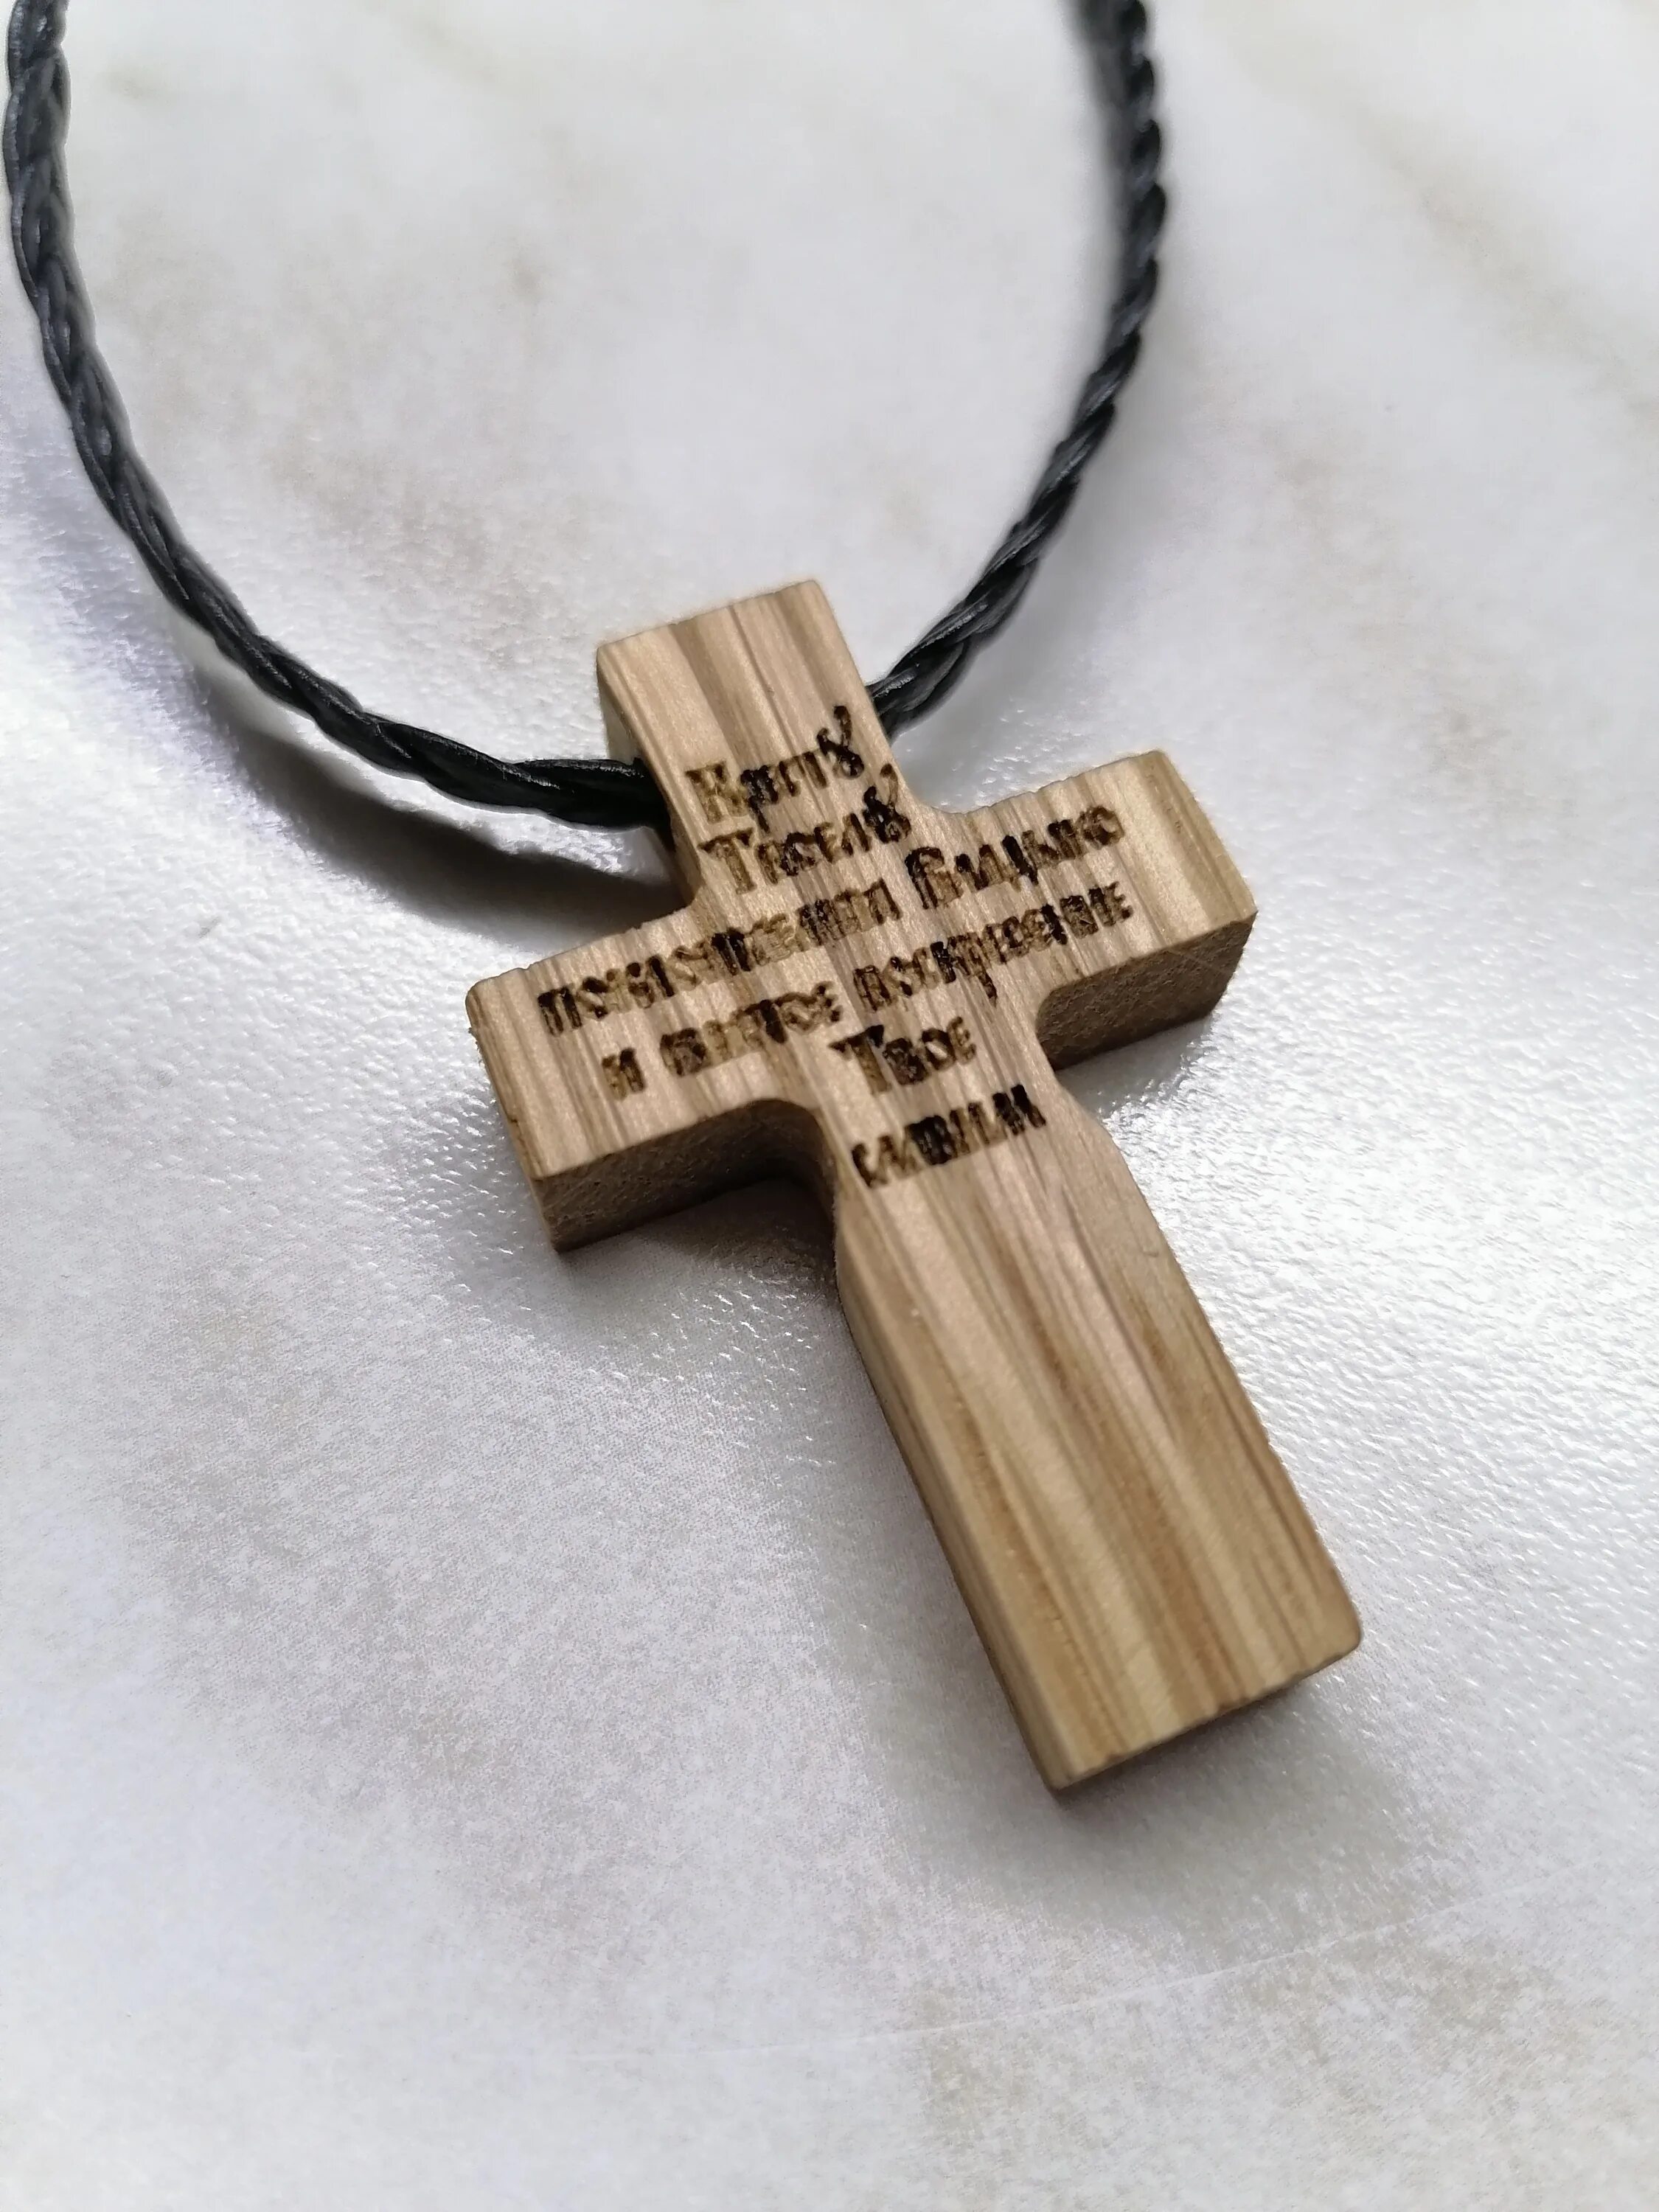 Крест нательный деревянный. Крест нательный деревянный мужской. Крестик нательный деревянный маленький. Деревянный нагрудный крест.